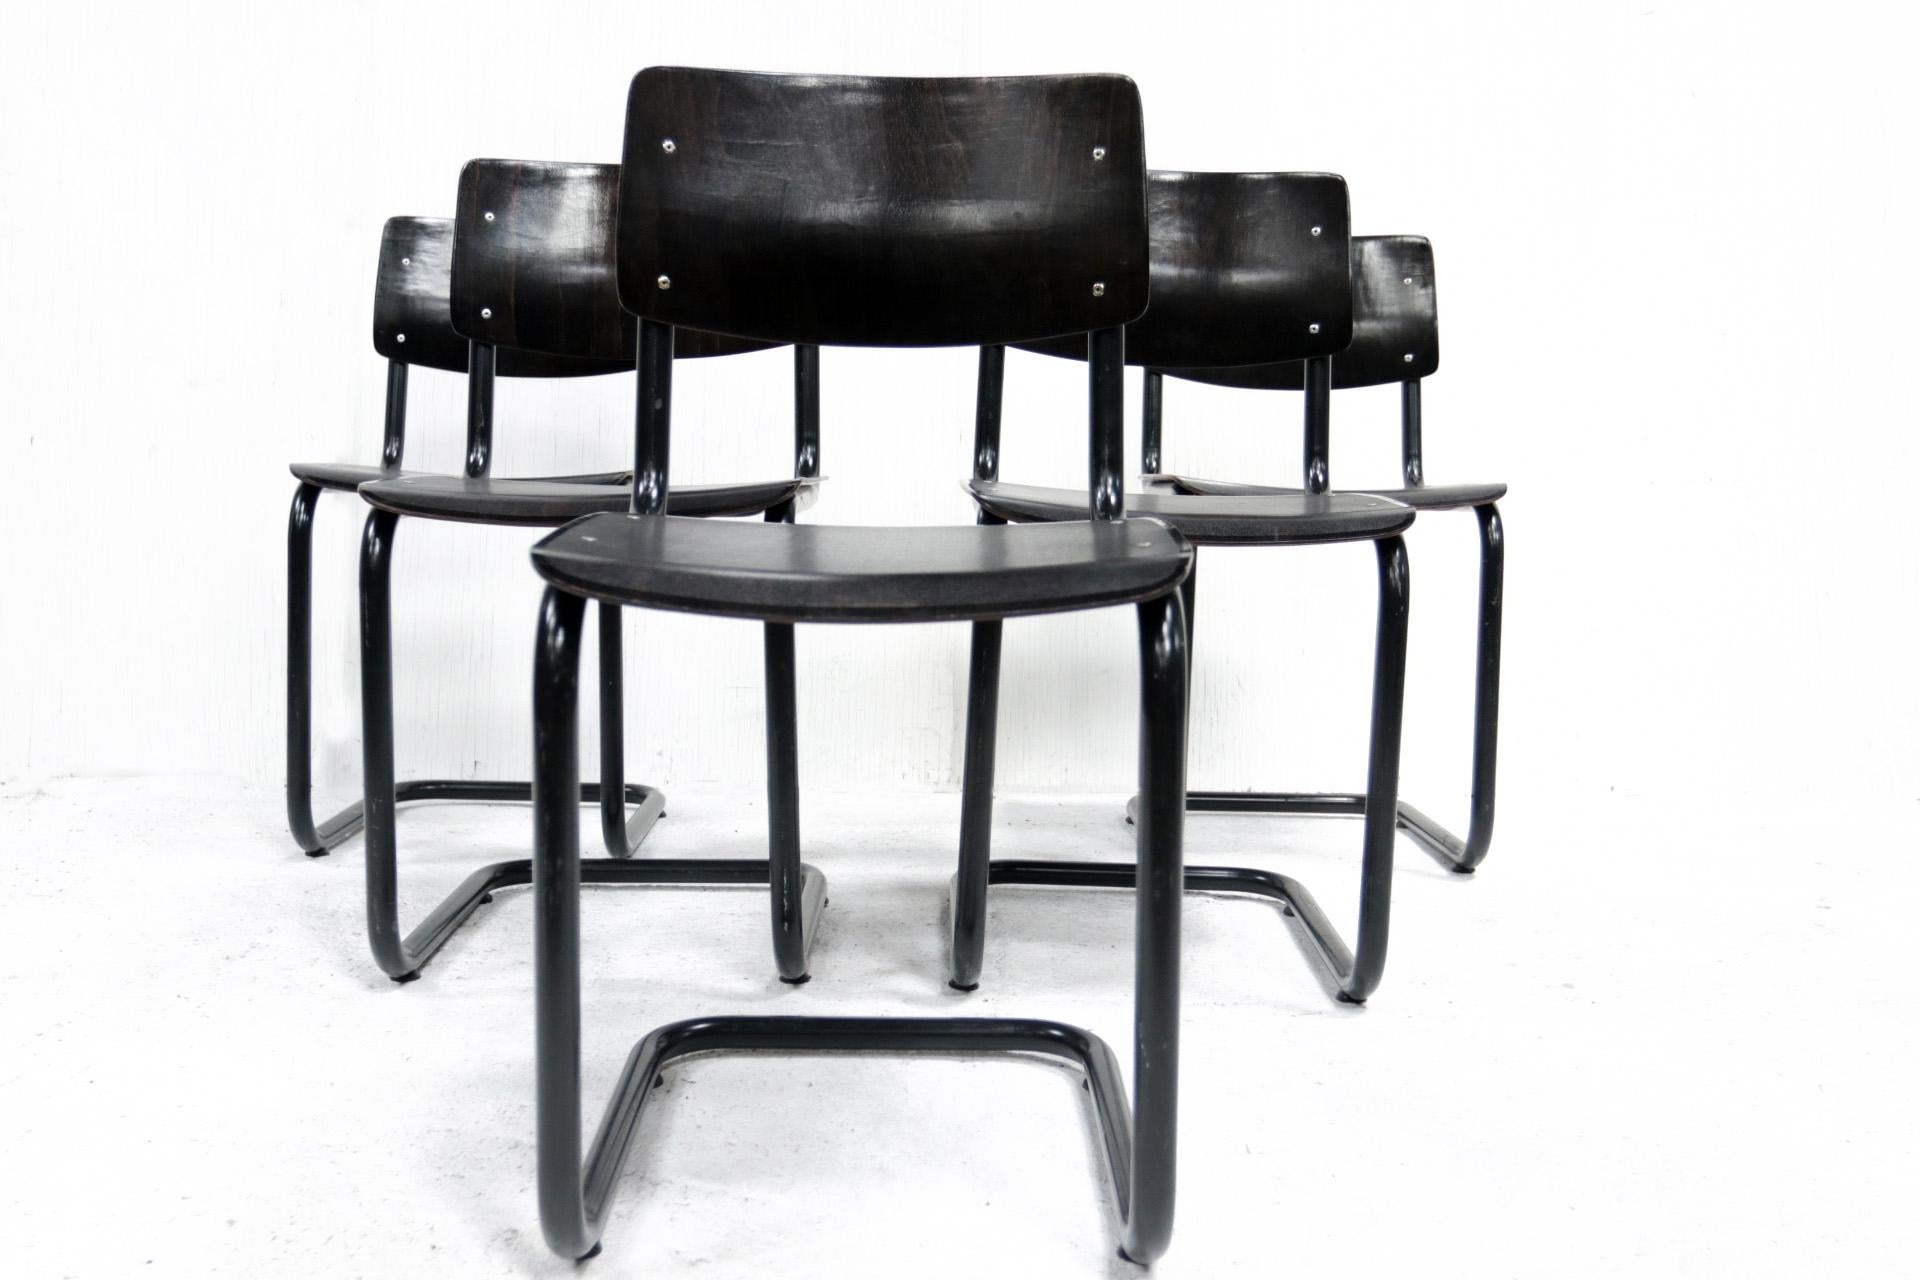 Bauhaus Dutch Design Midcentury Marcel Breuer style Ahrend Dining Chairs, 1970